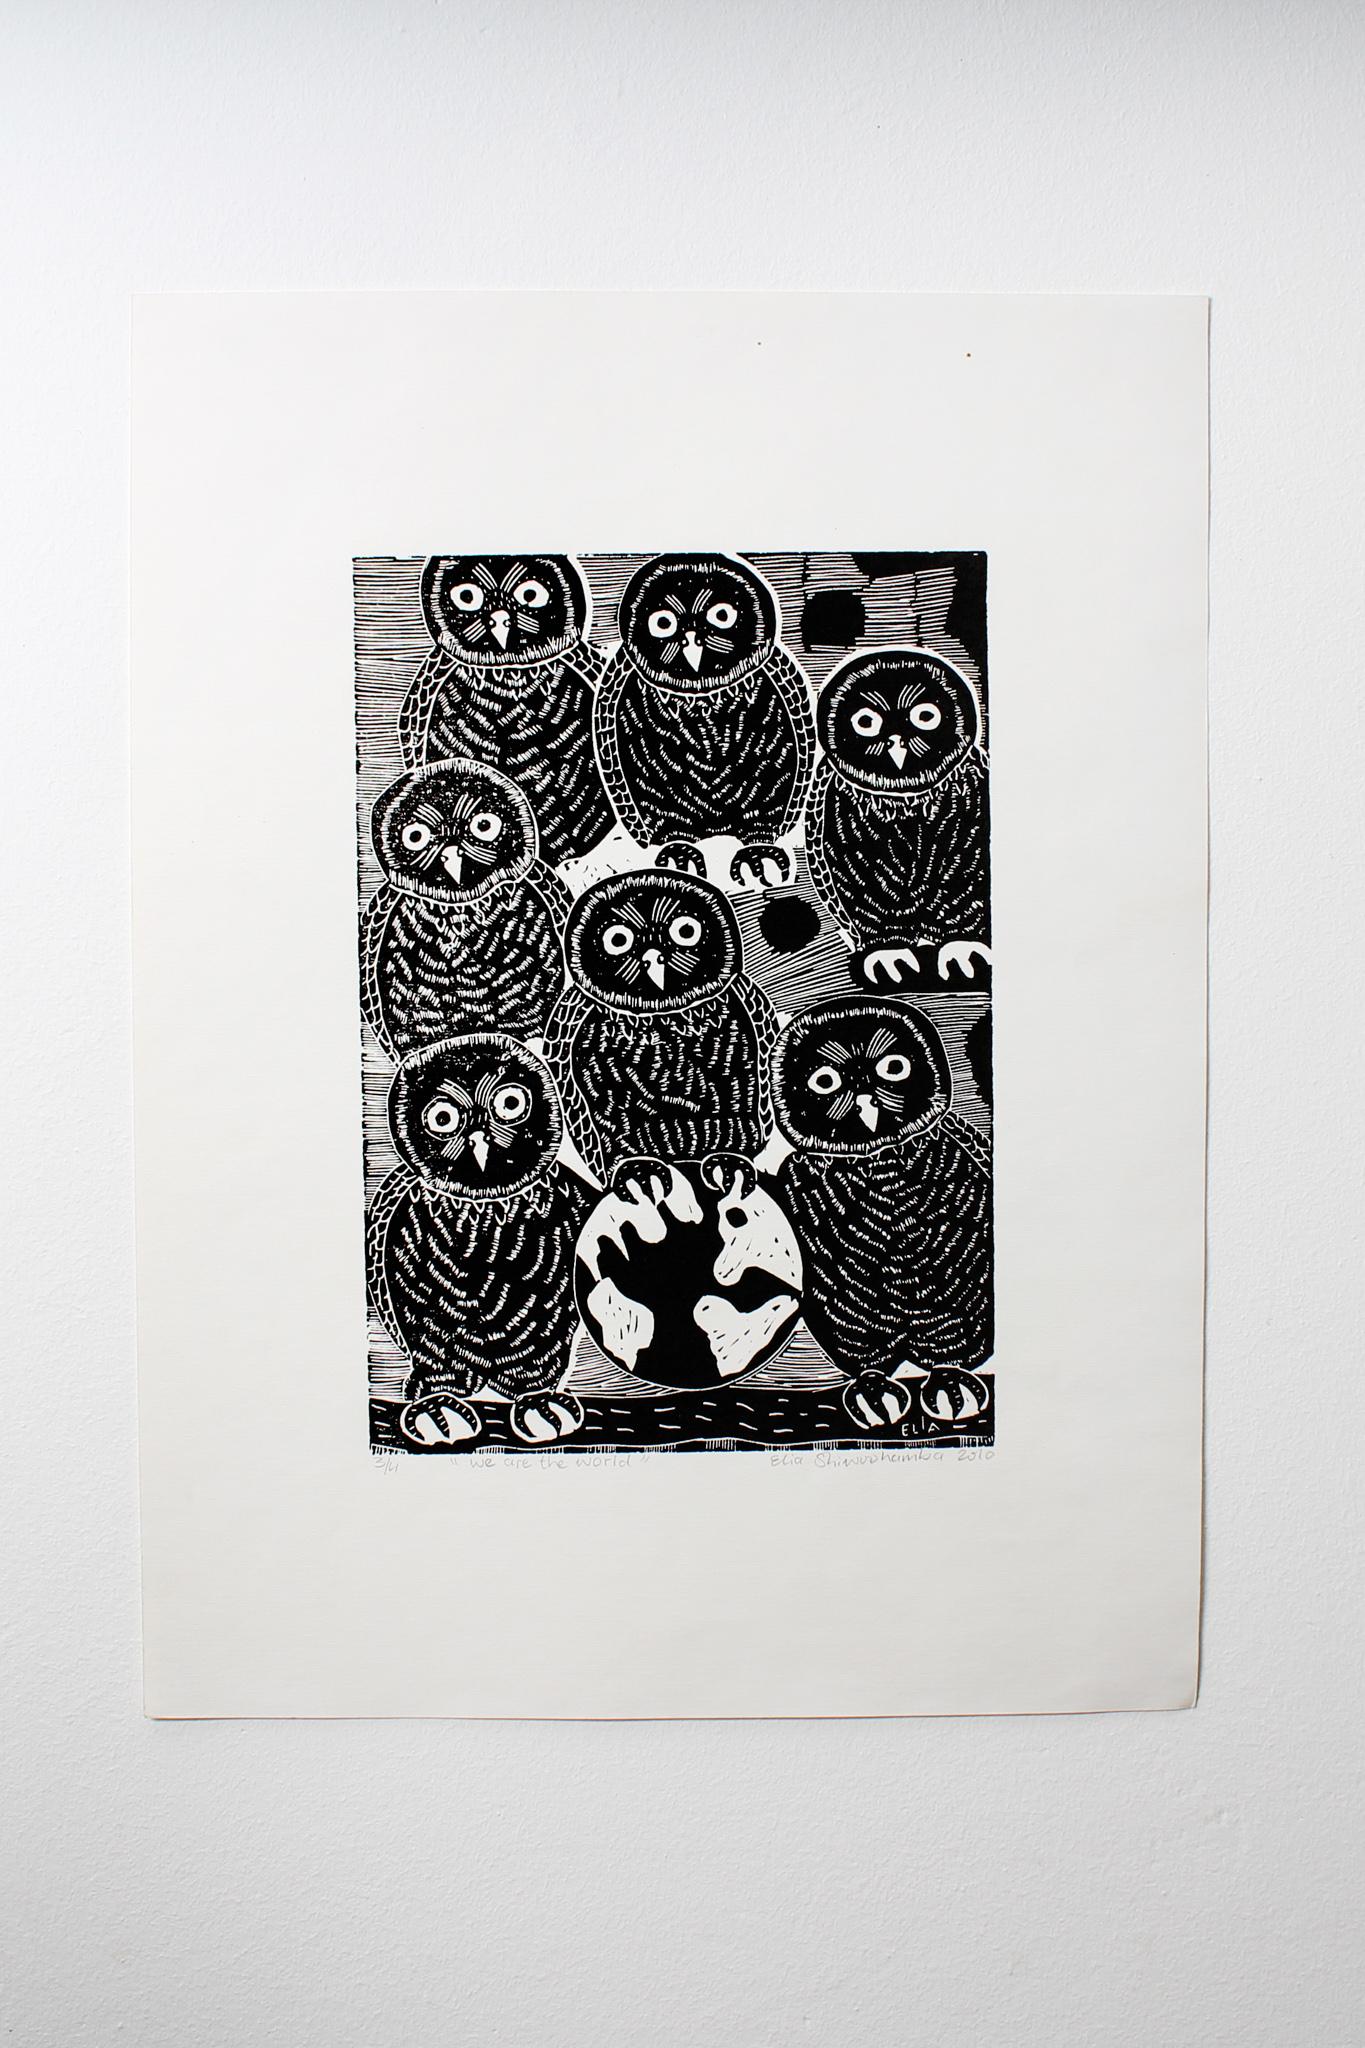 Wir sind die Welt, 2010. Linoleum-Blockdruck auf Papier. Auflage von 4 Stück.

Elia Shiwoohamba wurde 1981 in Windhoek, Namibia, geboren. Im Jahr 2006 machte er seinen Abschluss am John Muafangejo Art Centre in Windhoek. Shiwoohamba ist auf